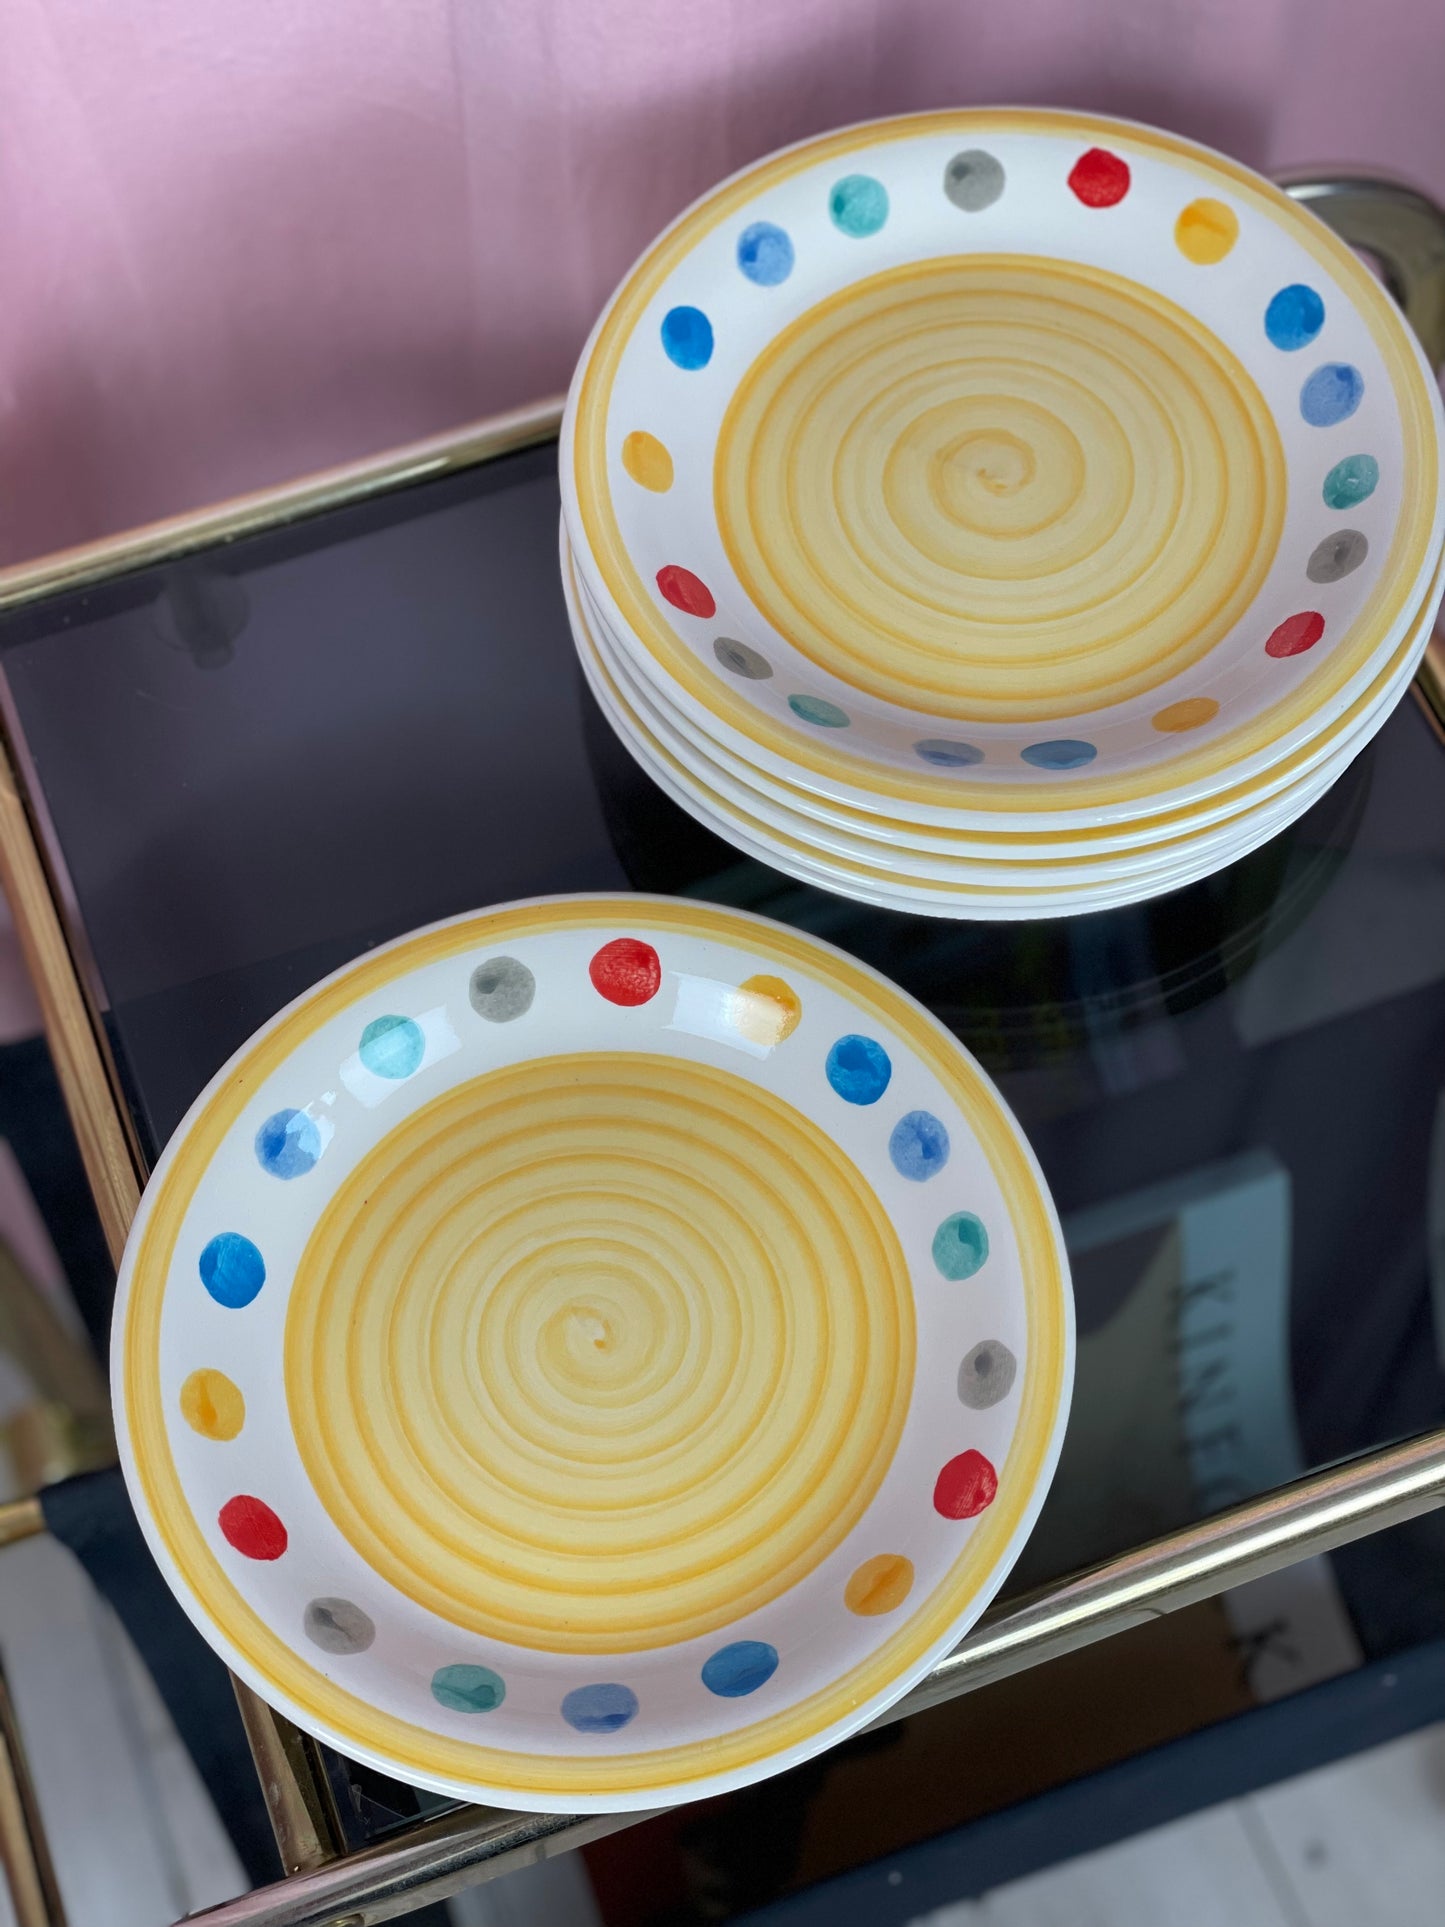 Breakfast plates - Tivoli style